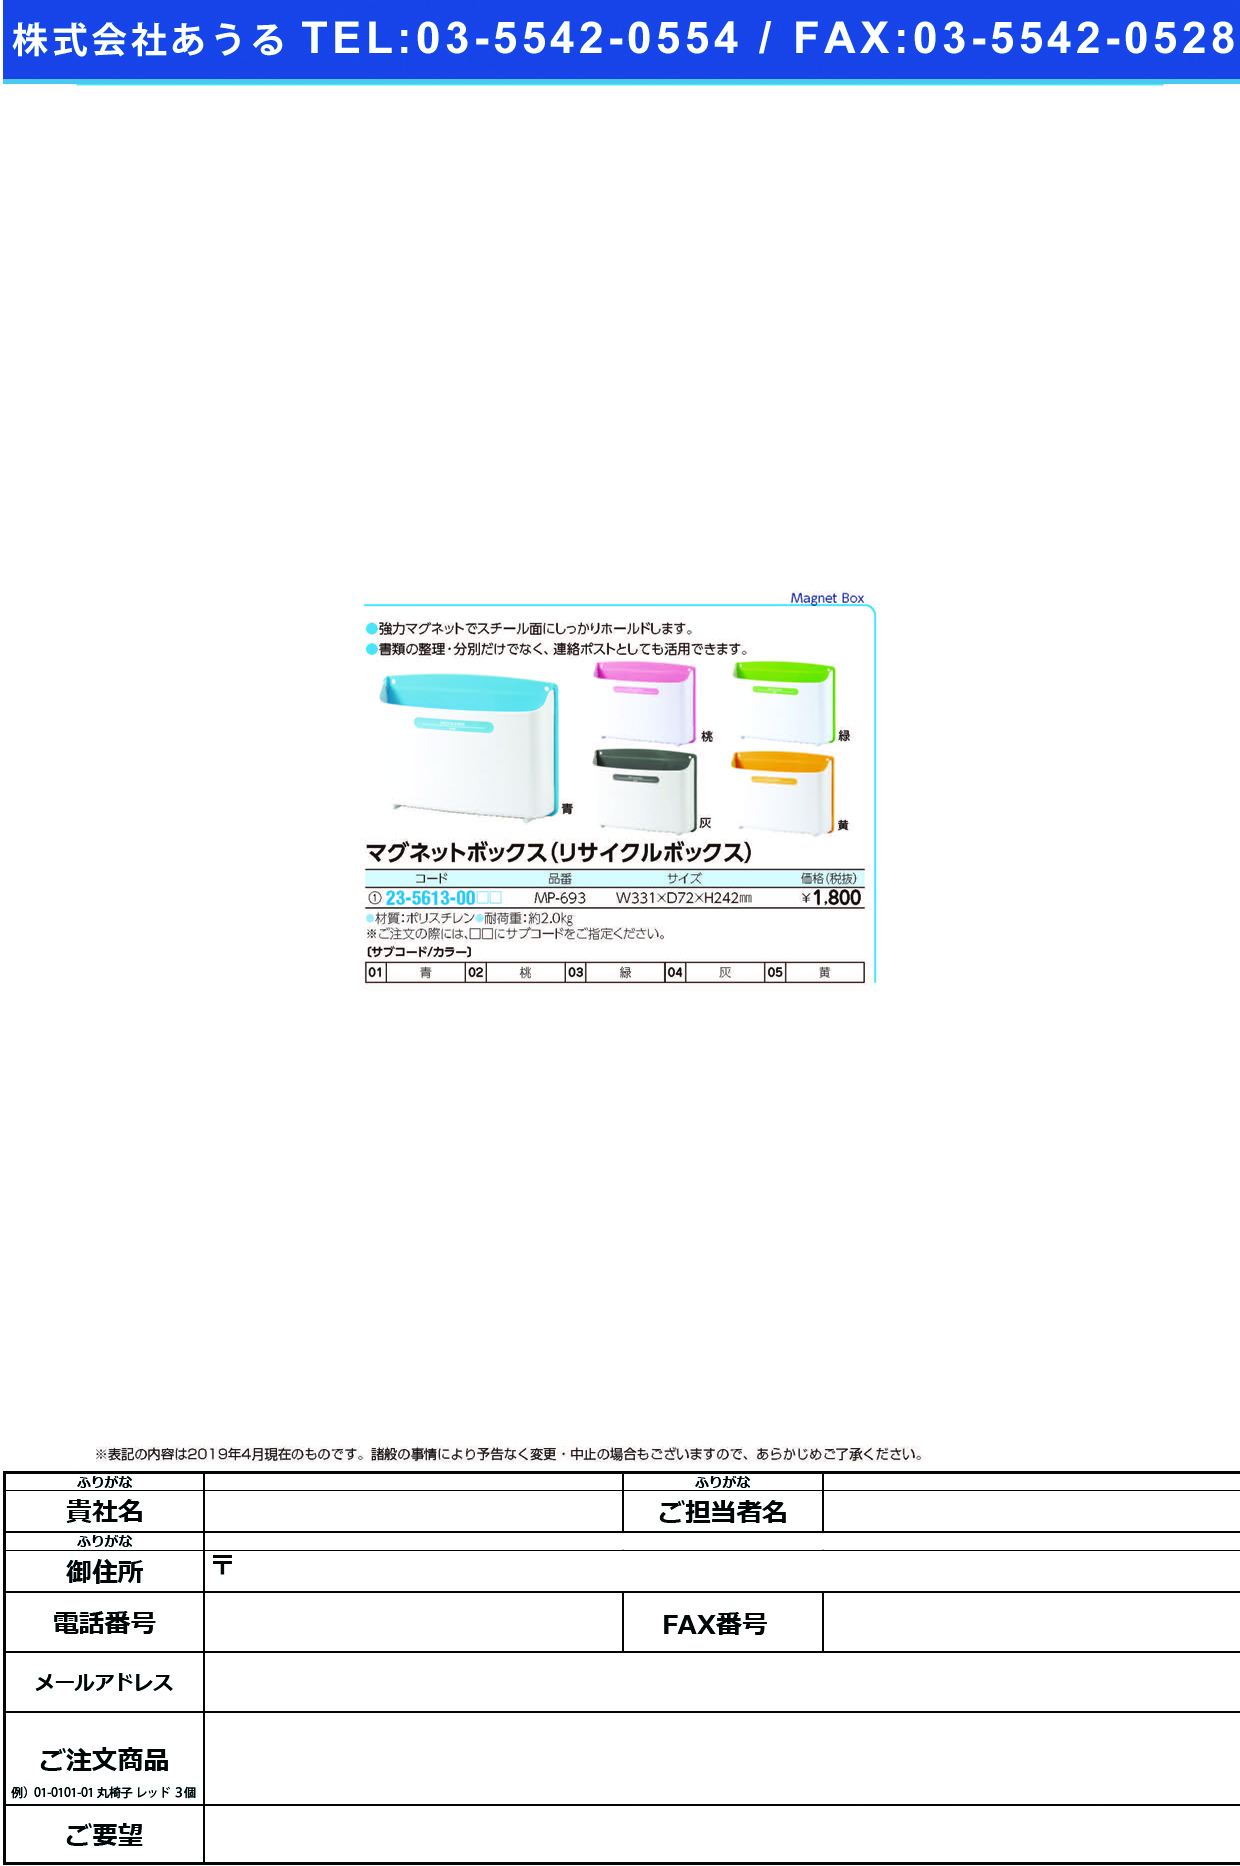 (23-5613-00)マグネットボックス（リサイクルＢＯＸ MP-693 ﾏｸﾞﾈｯﾄﾎﾞｯｸｽ(ﾘｻｲｸﾙBOX 黄【1個単位】【2019年カタログ商品】